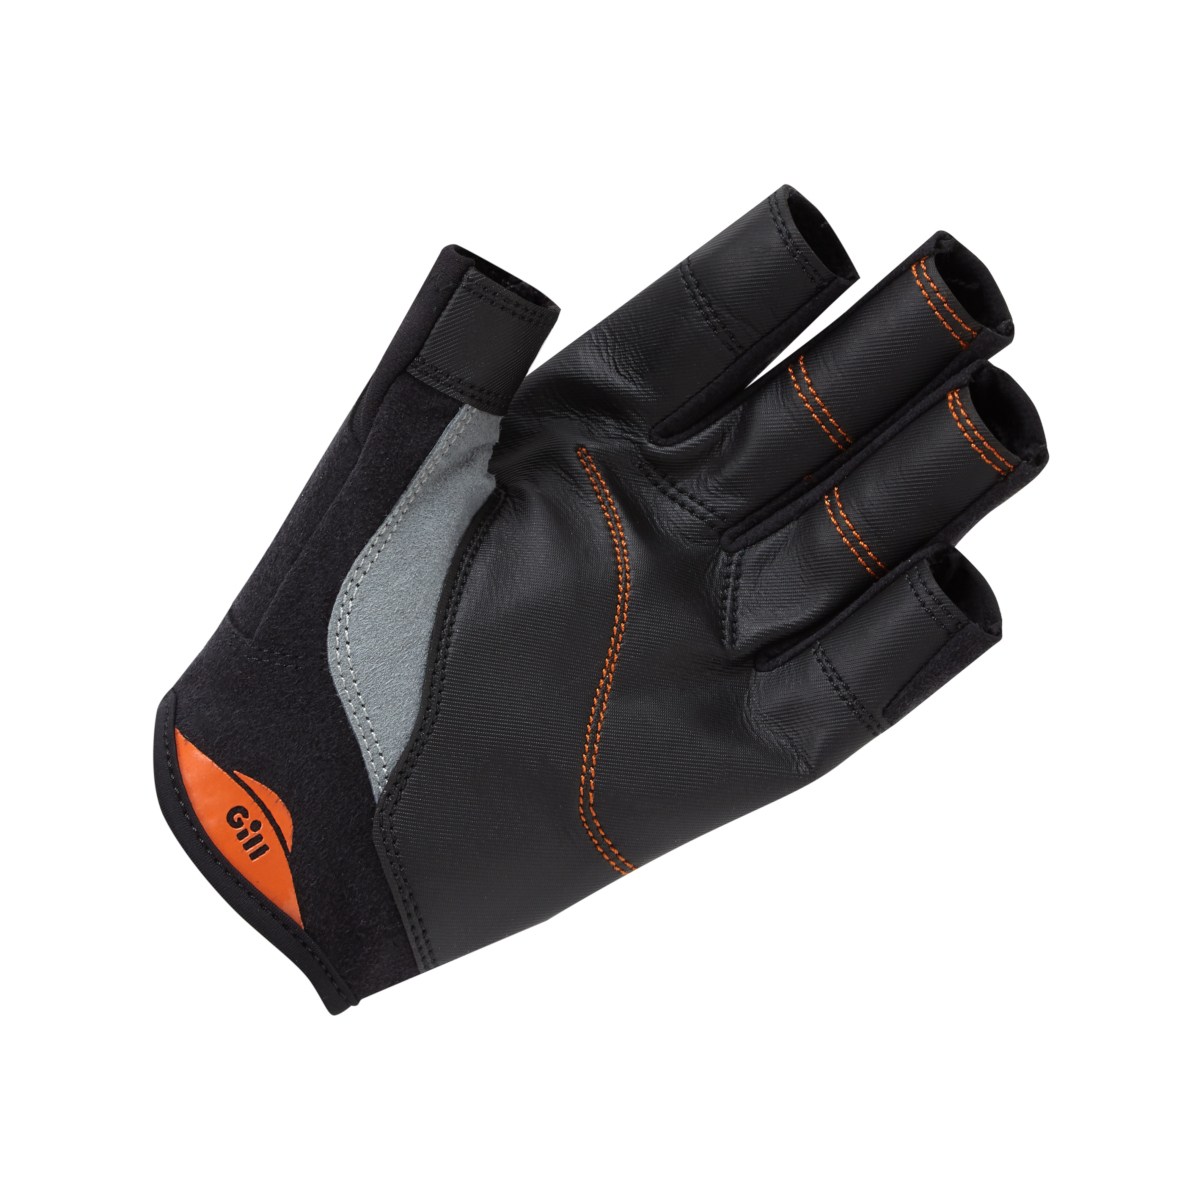 Gill Championship gants de voile à doigts courts - noir, taille XL